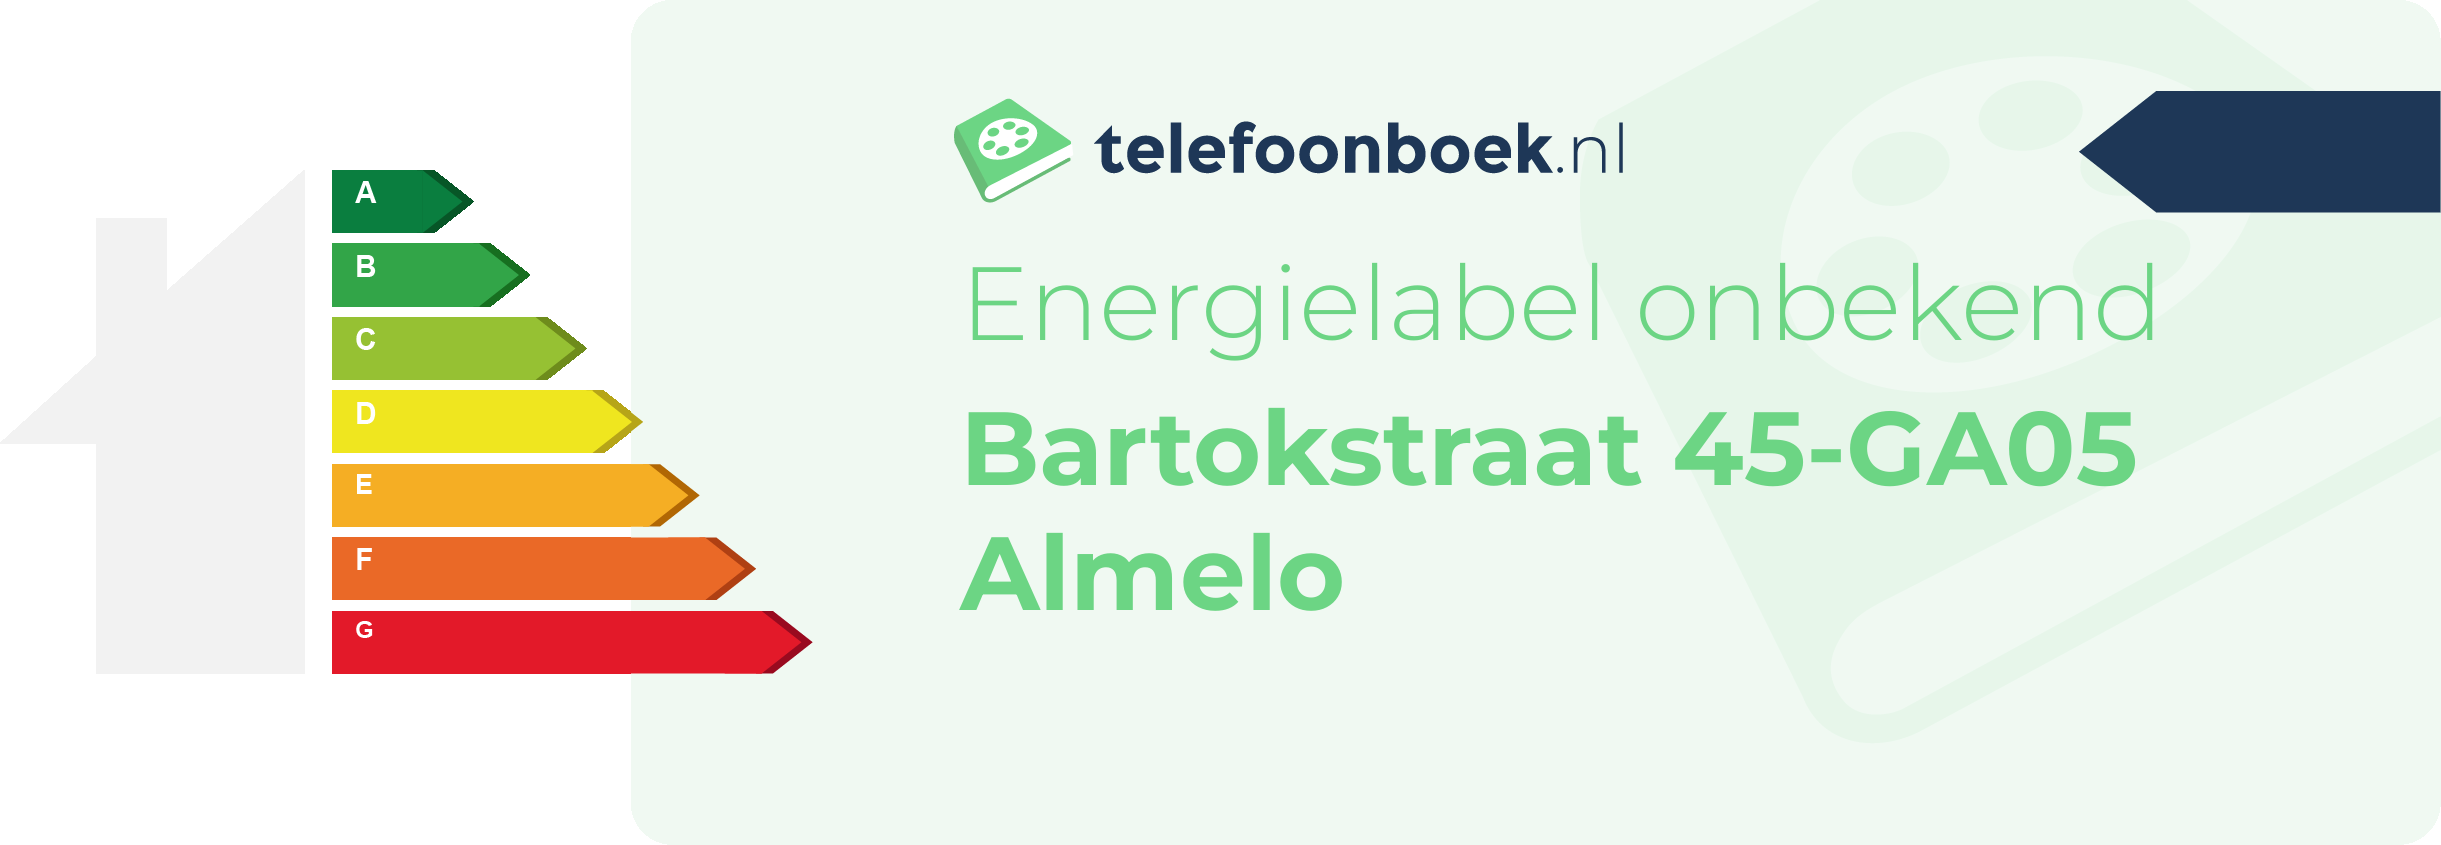 Energielabel Bartokstraat 45-GA05 Almelo